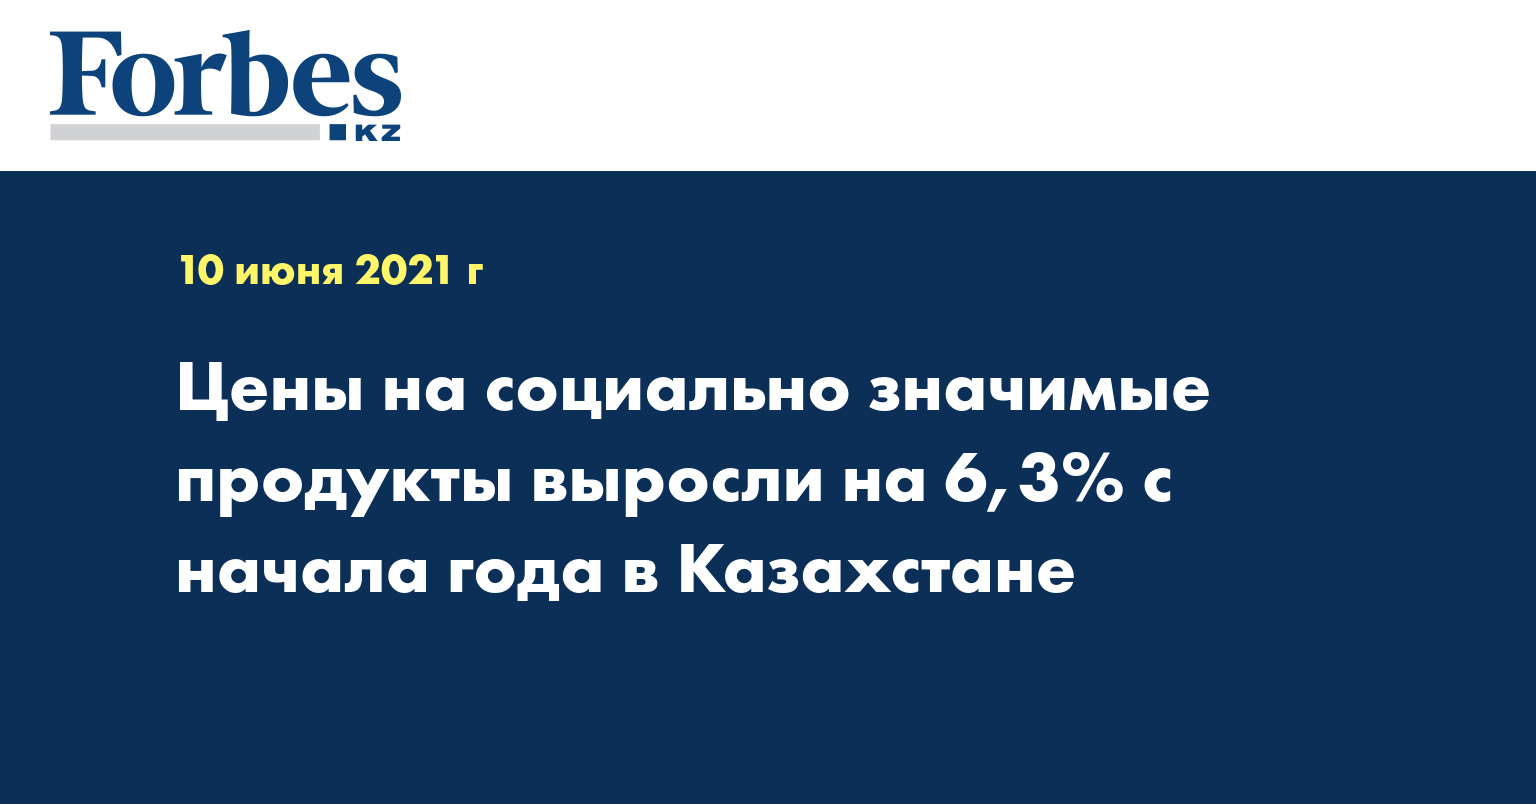 Цены на социально значимые продукты выросли на 6,3% с начала года в Казахстане